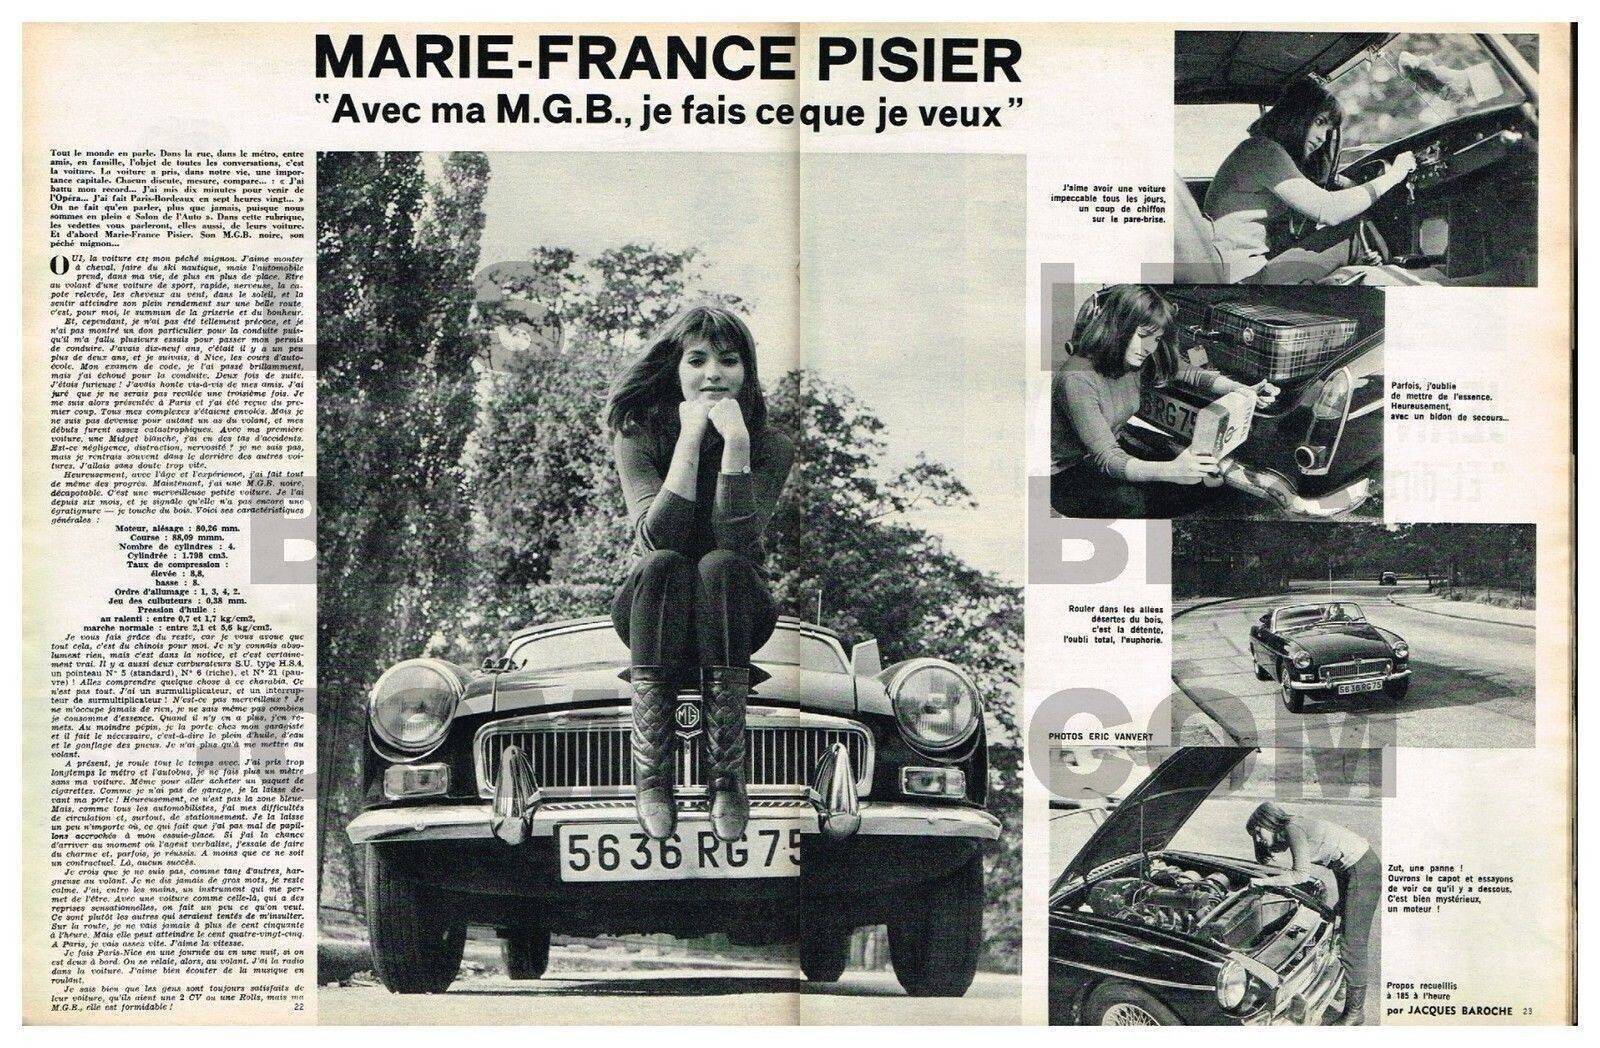 MG B Marie France Pisier.jpg